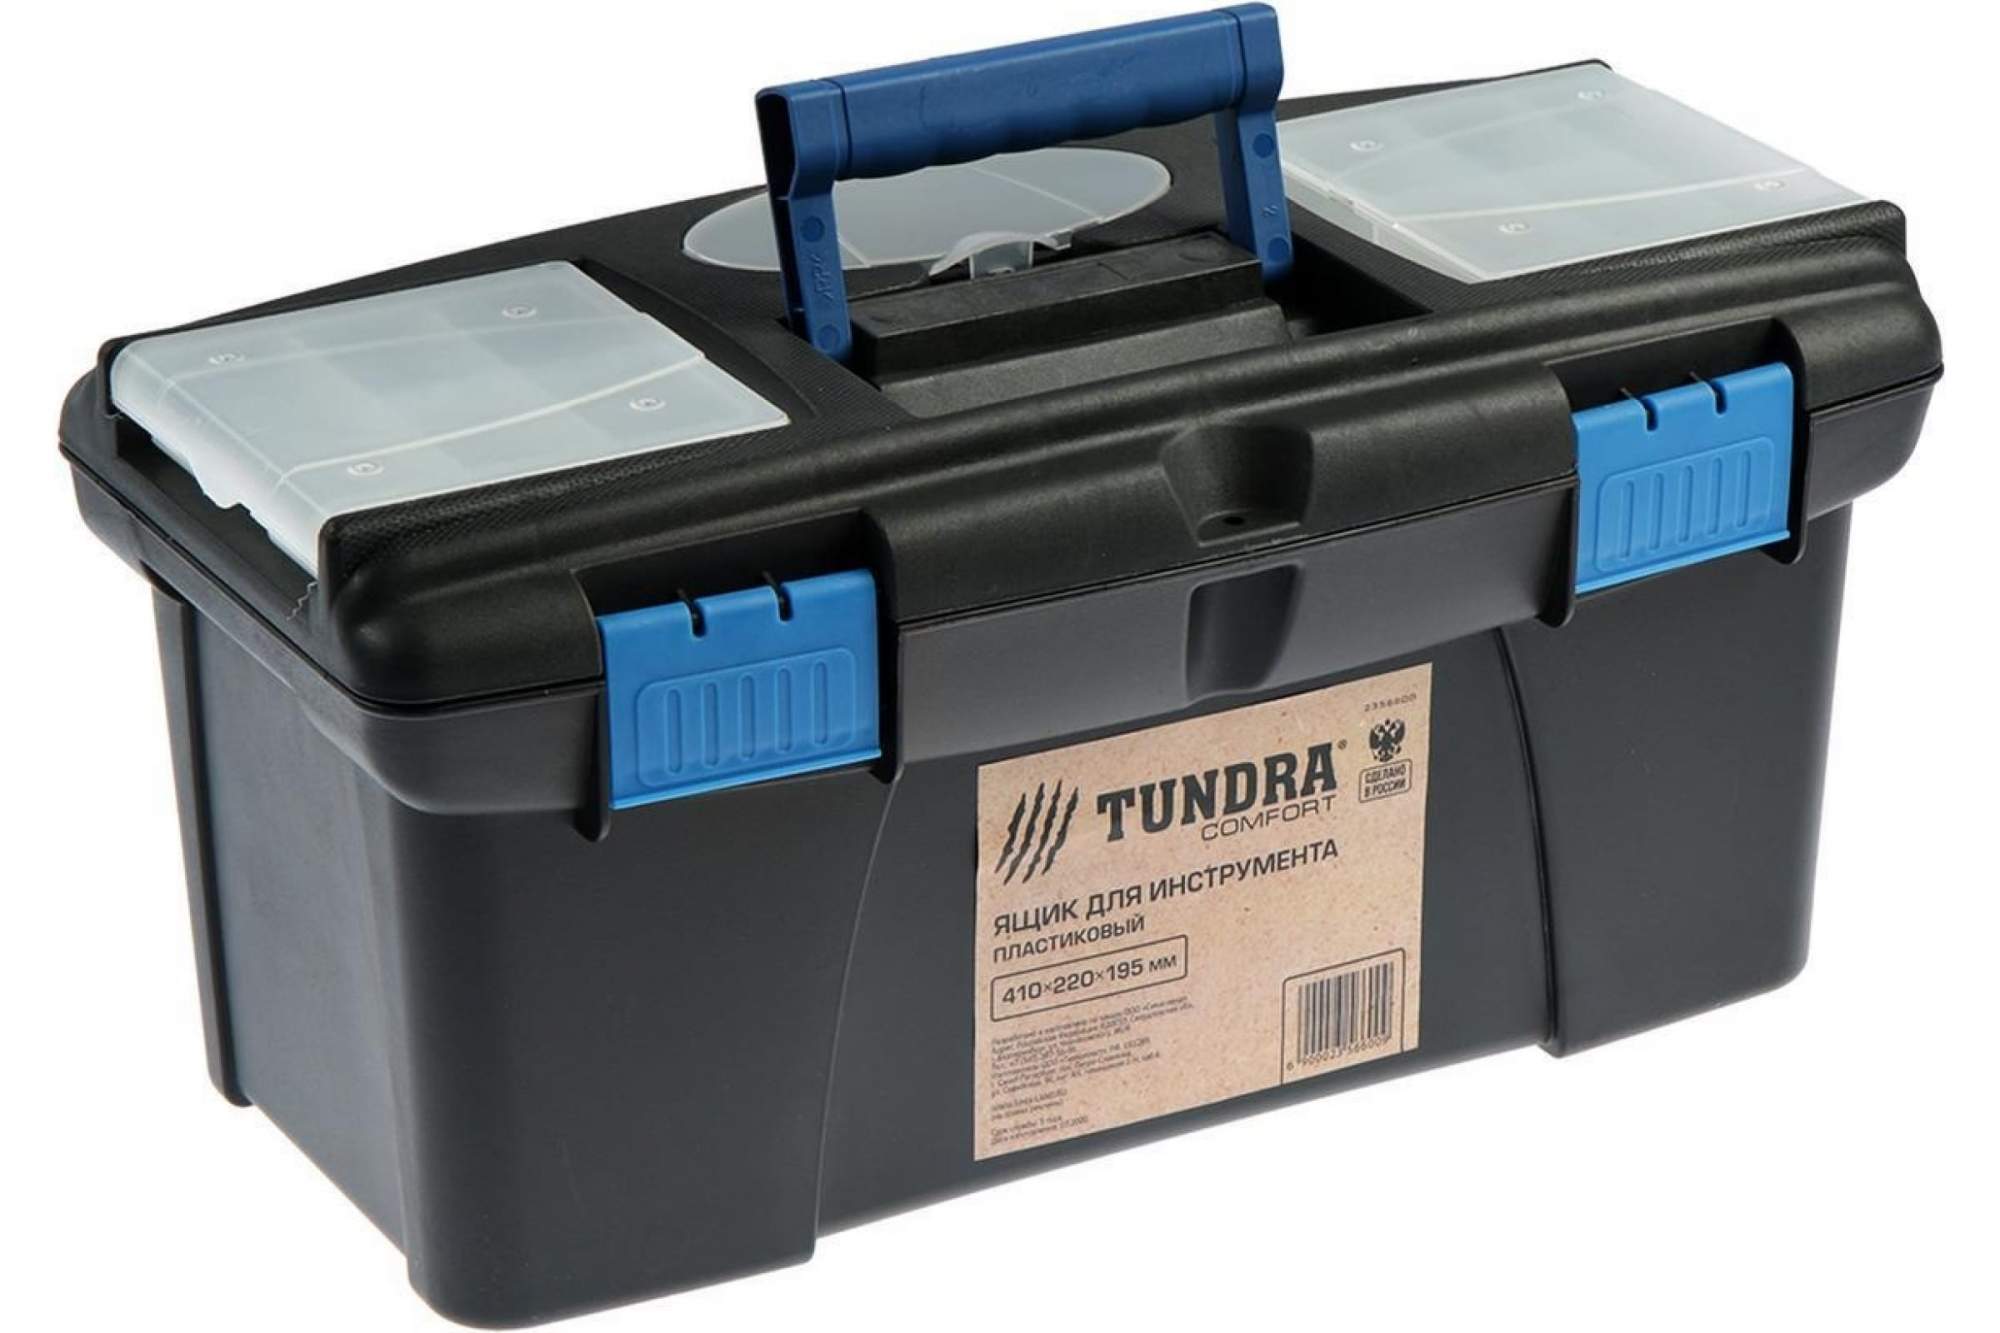 Ящик для инструмента ТУНДРА, 16", 410 х 220 х 195 мм, пластиковый - купить в Фабрика Успеха, цена на Мегамаркет